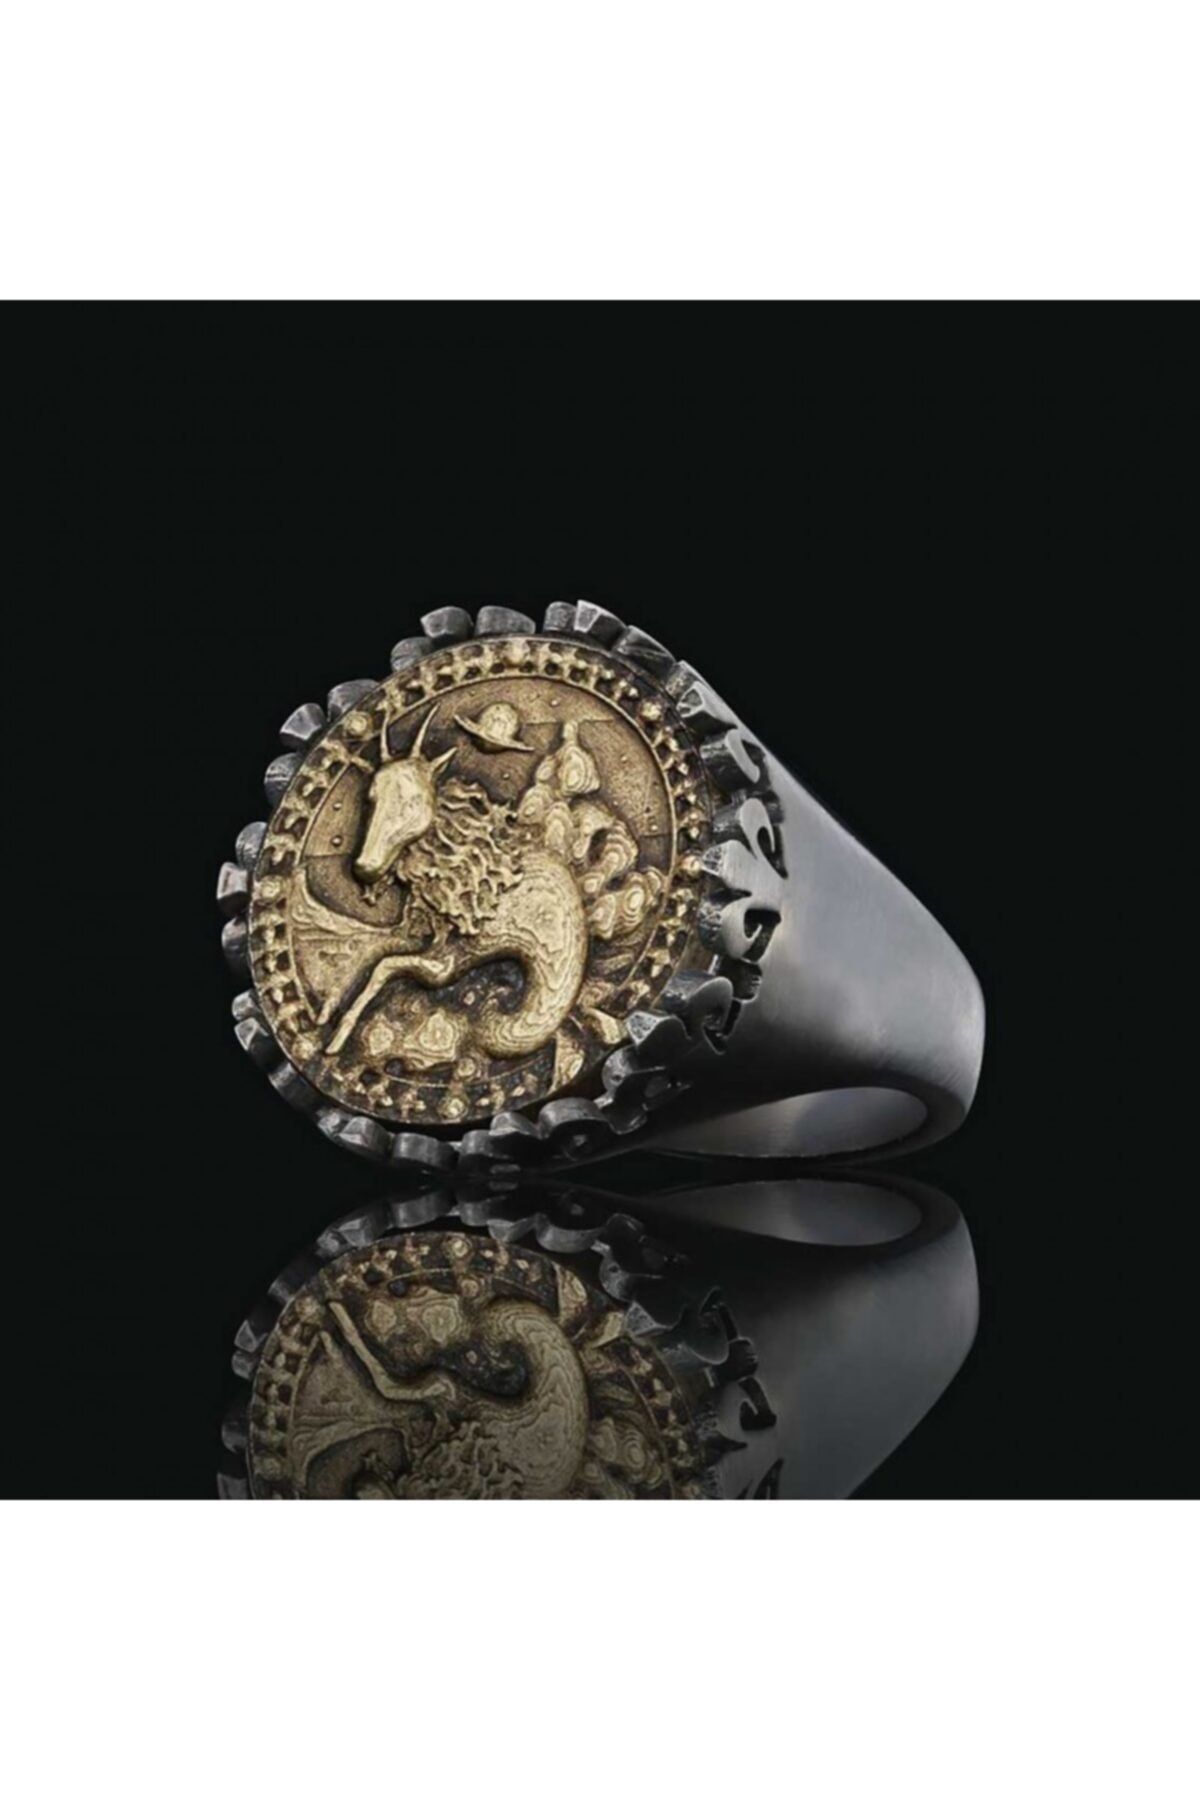 ELMAS İŞ Oğlak Burcu Özel Tasarım 925 Ayar Gümüş Üzeri Siyah Rodyum Kaplama Koleksiyon Yüzük